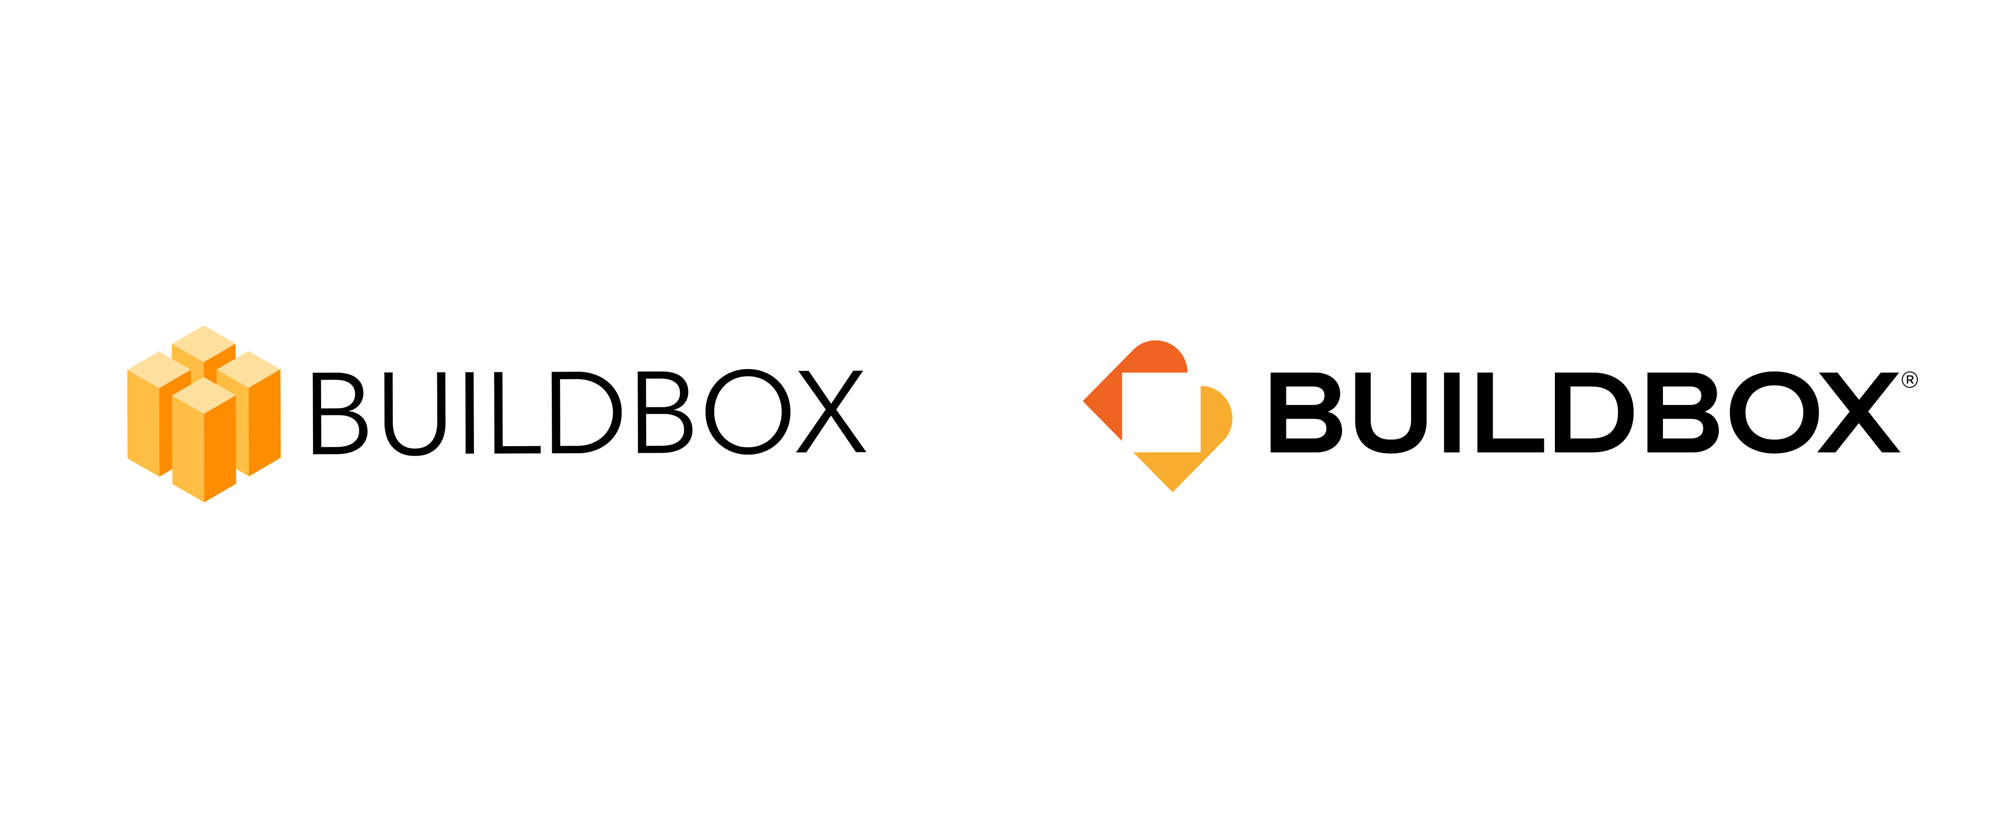 buildbox trial art pack